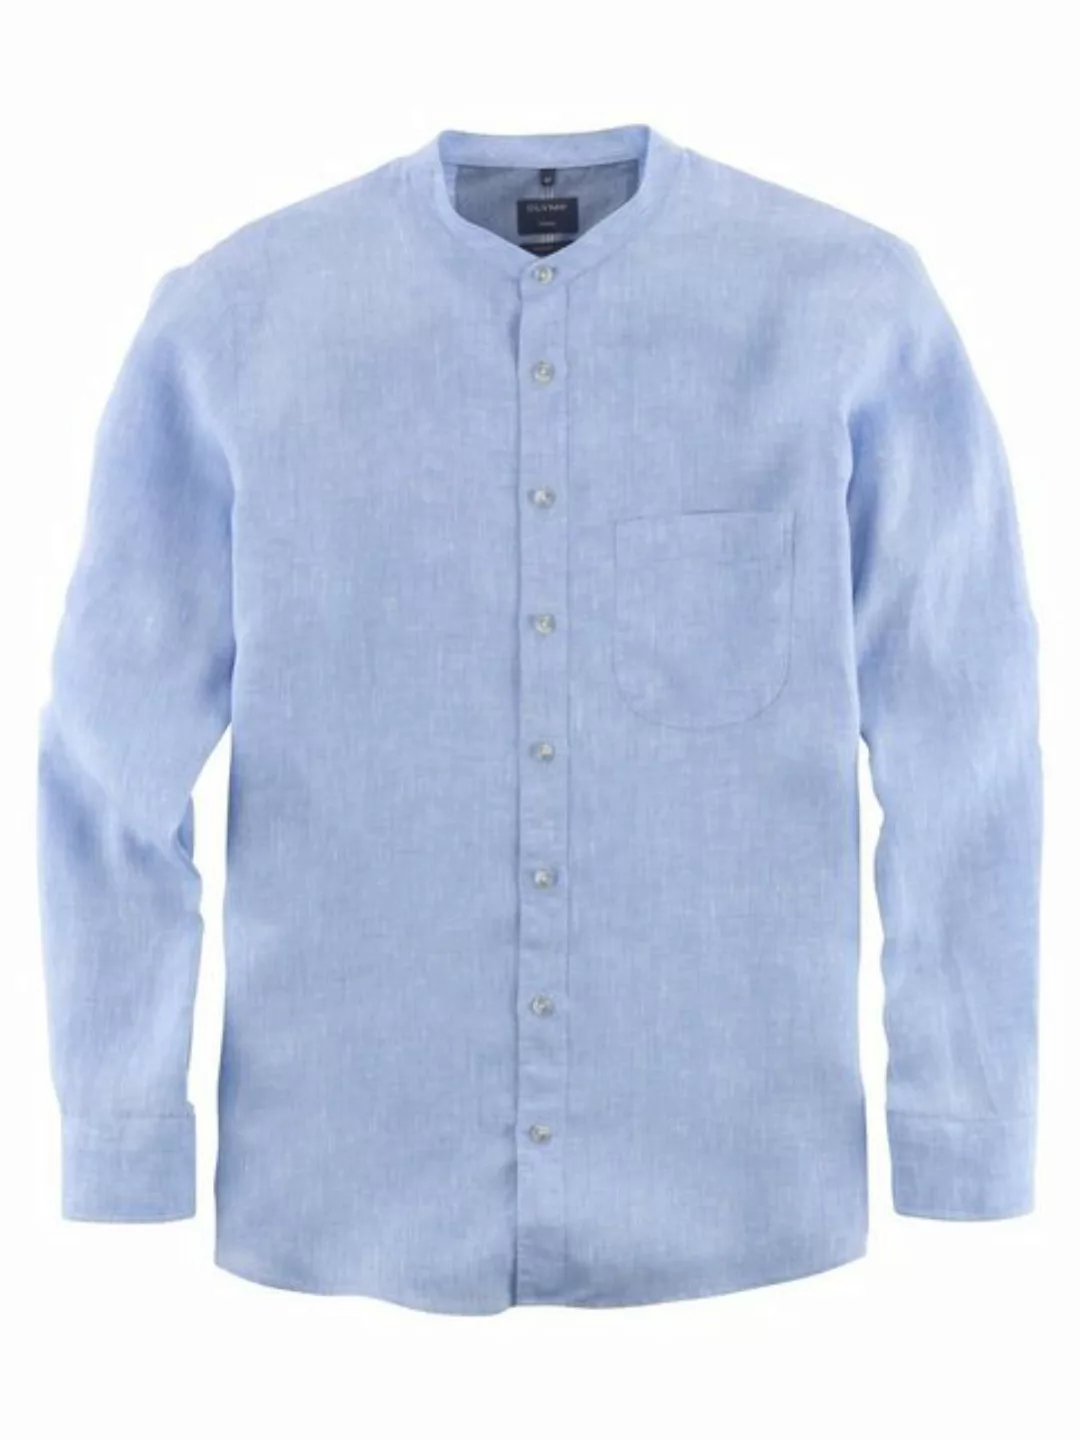 OLYMP Leinenhemd 4042/34 Hemden günstig online kaufen